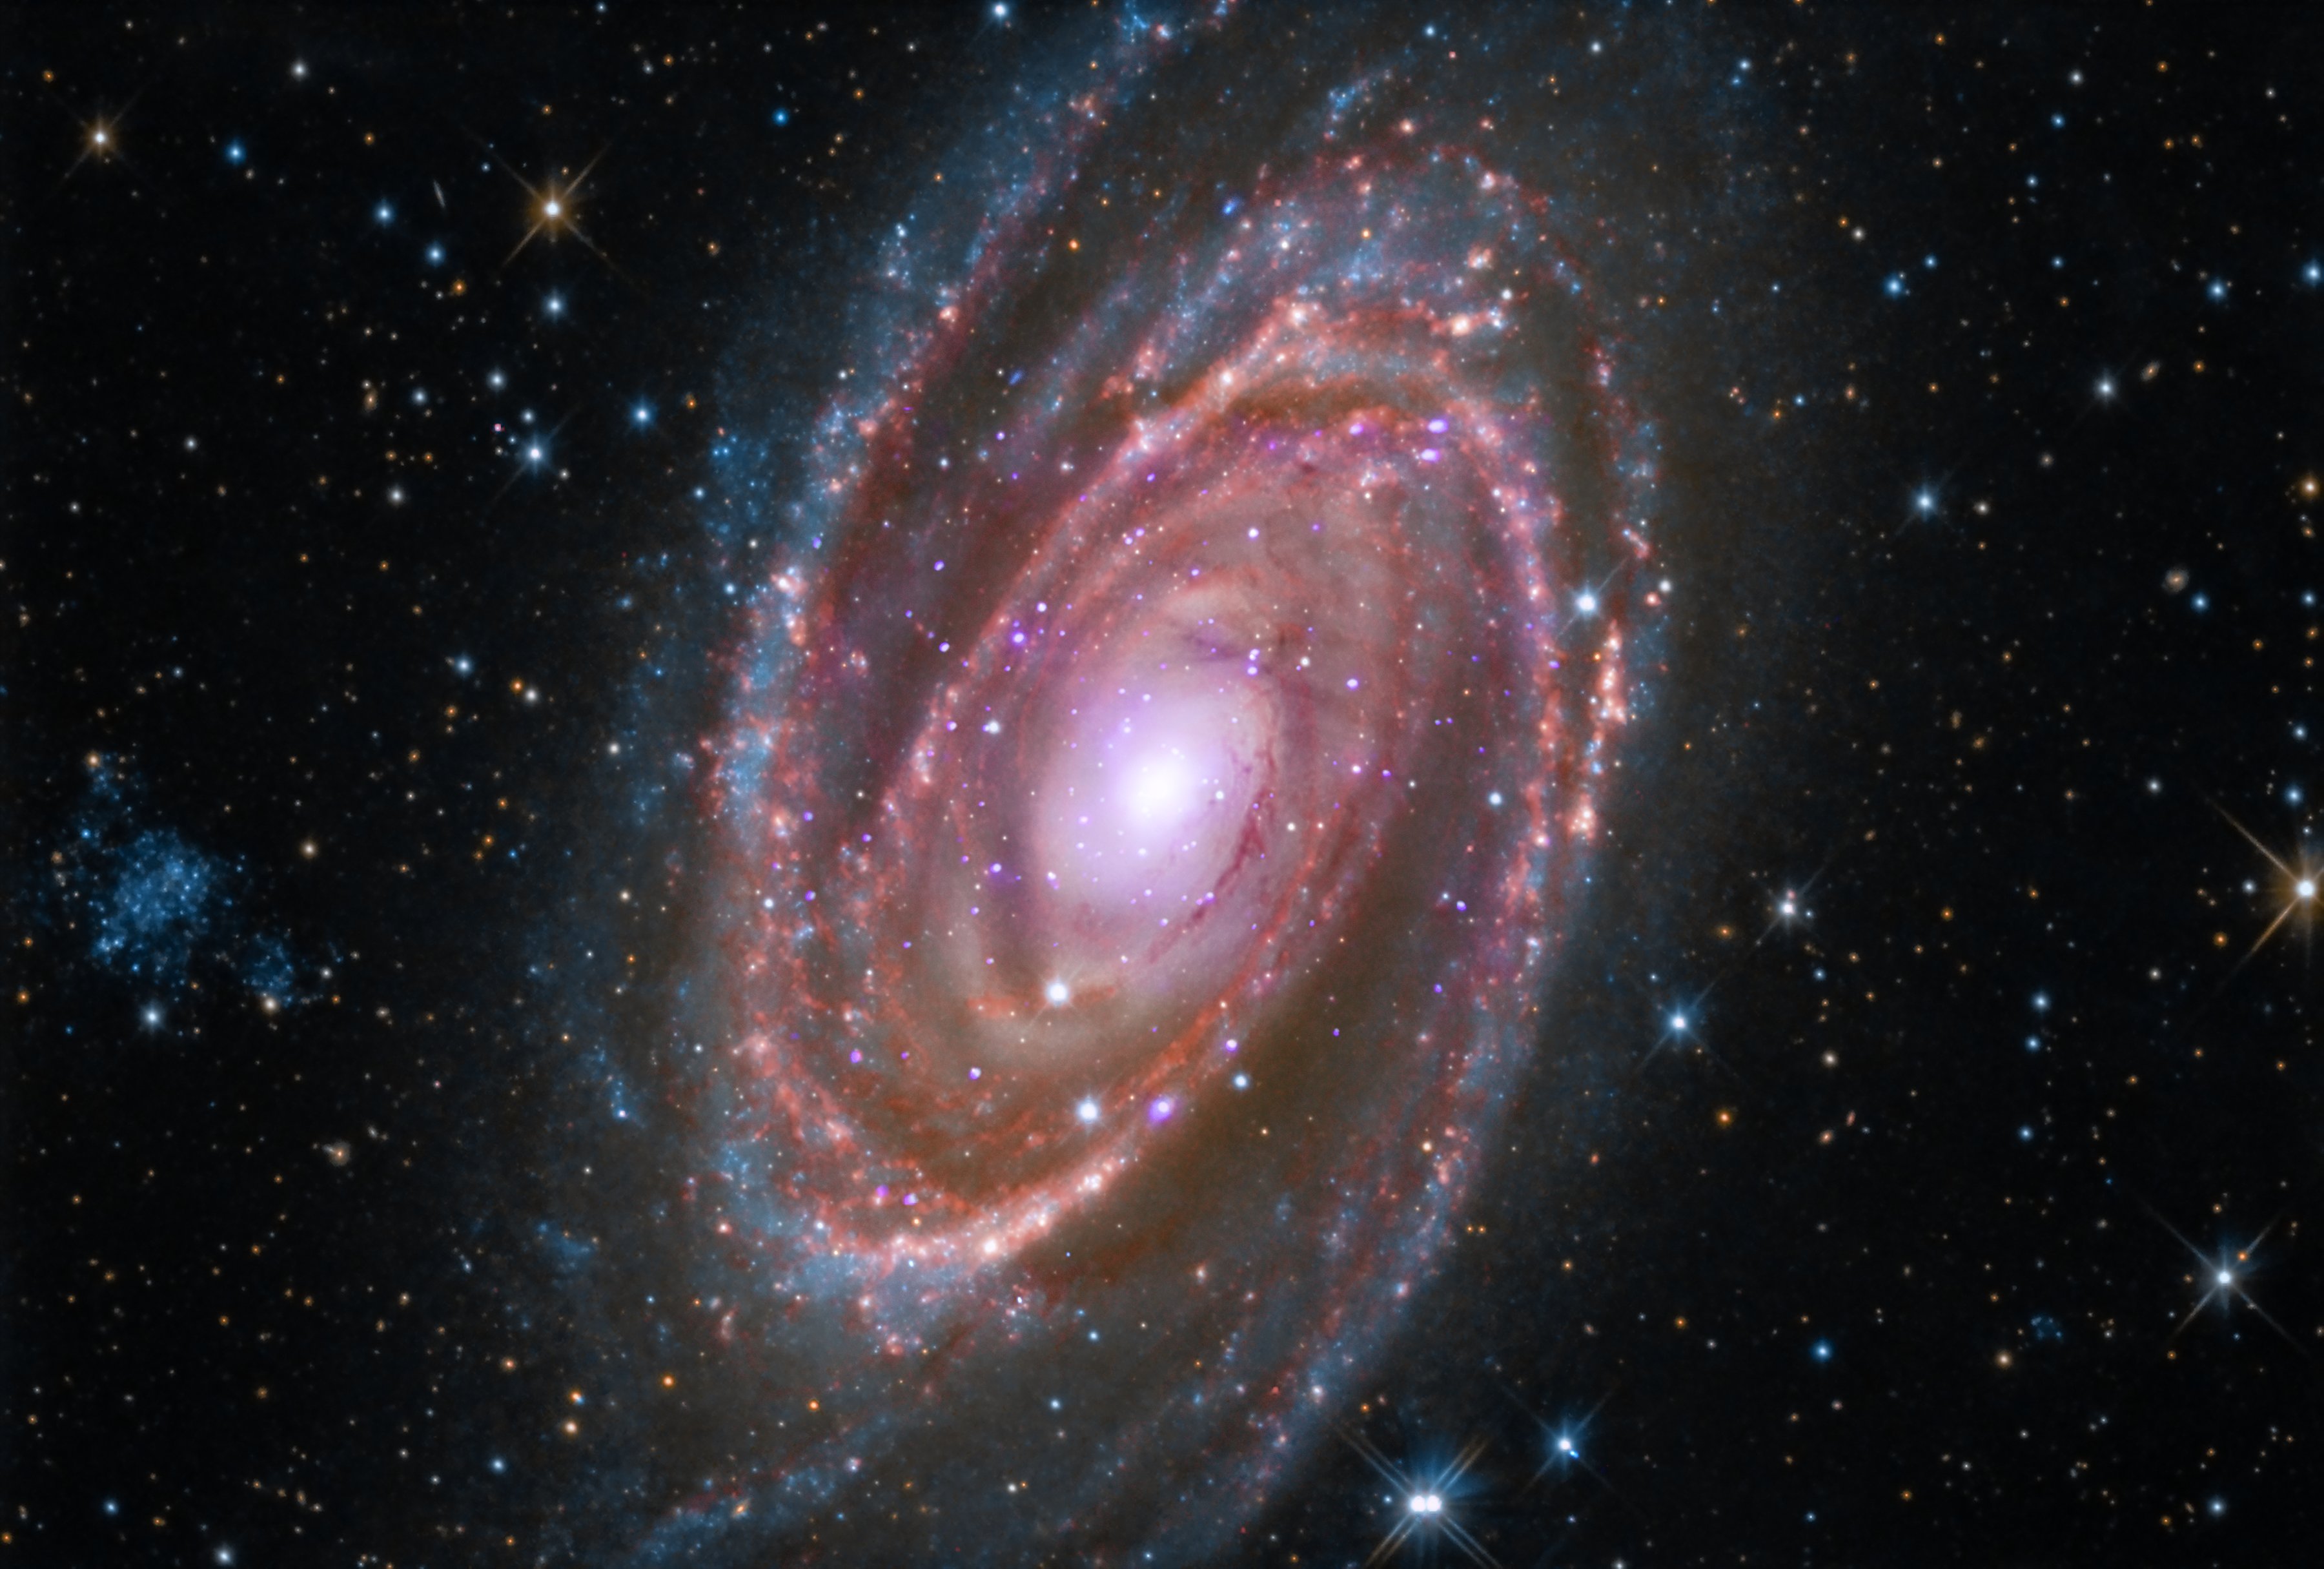 La galaxia espiral M81 se encuentra a unos 12 millones de años luz de la Tierra.